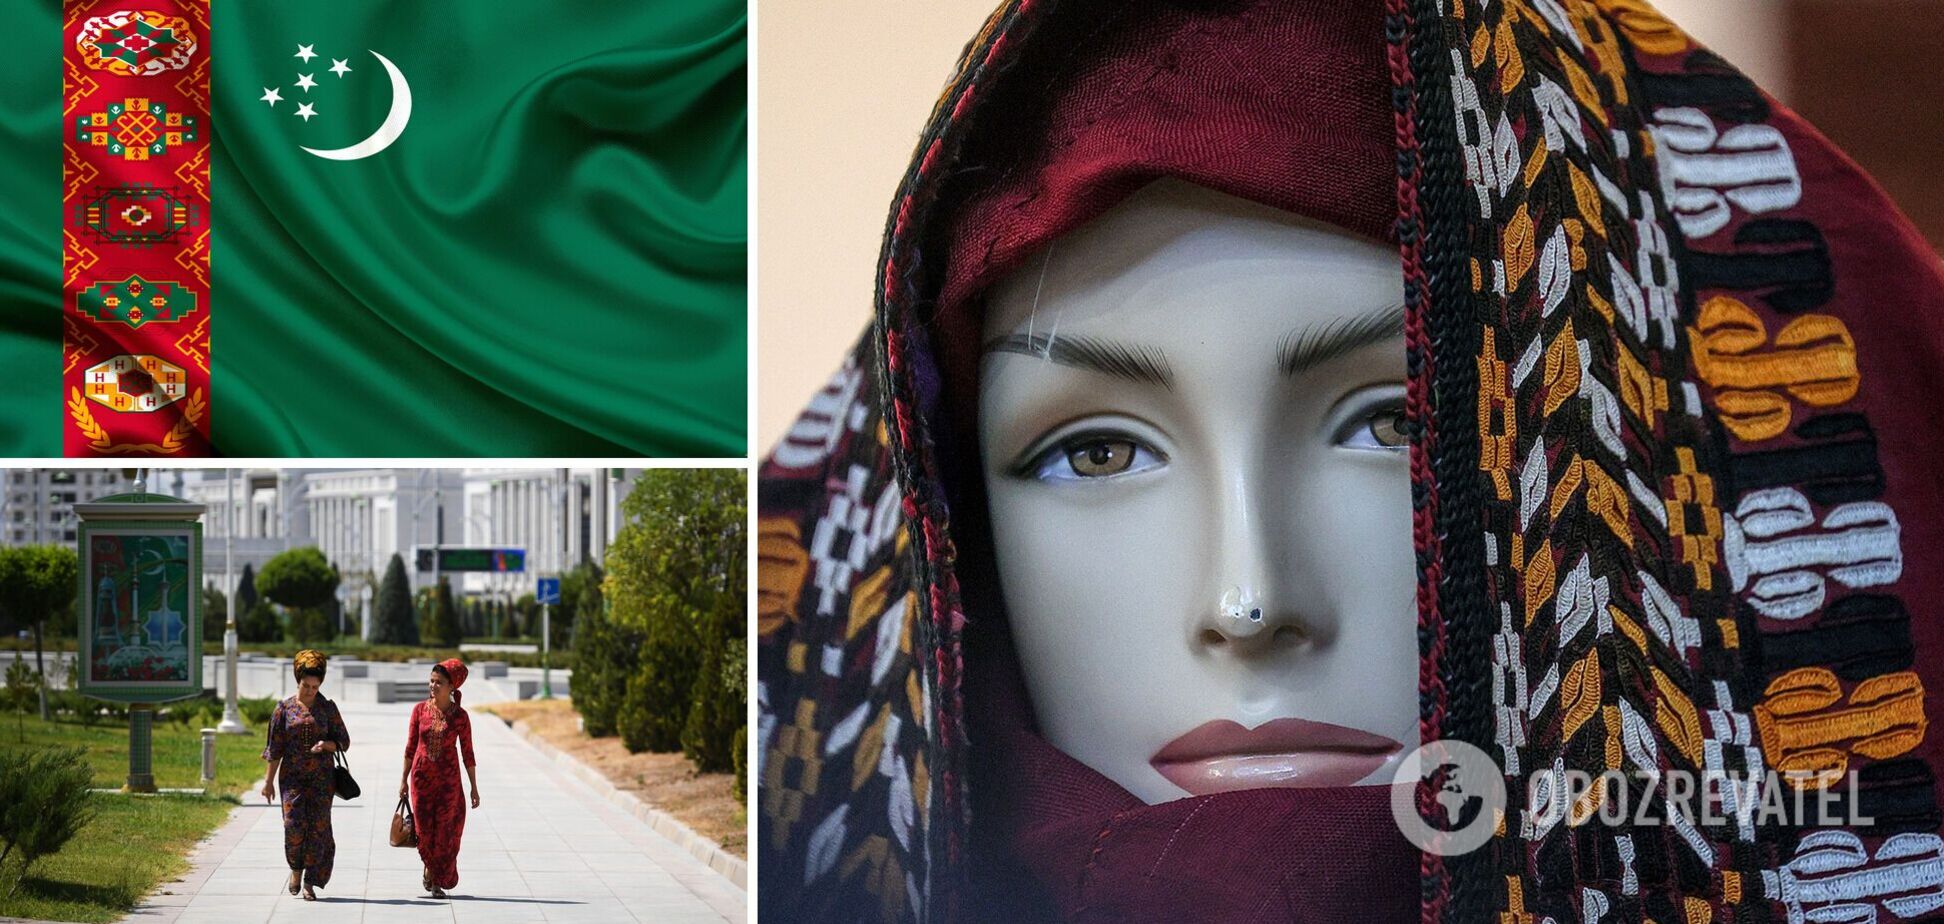 Побои за красоту и штрафы за 'неправильное' белье: как в Туркменистане ограничивают права женщин 